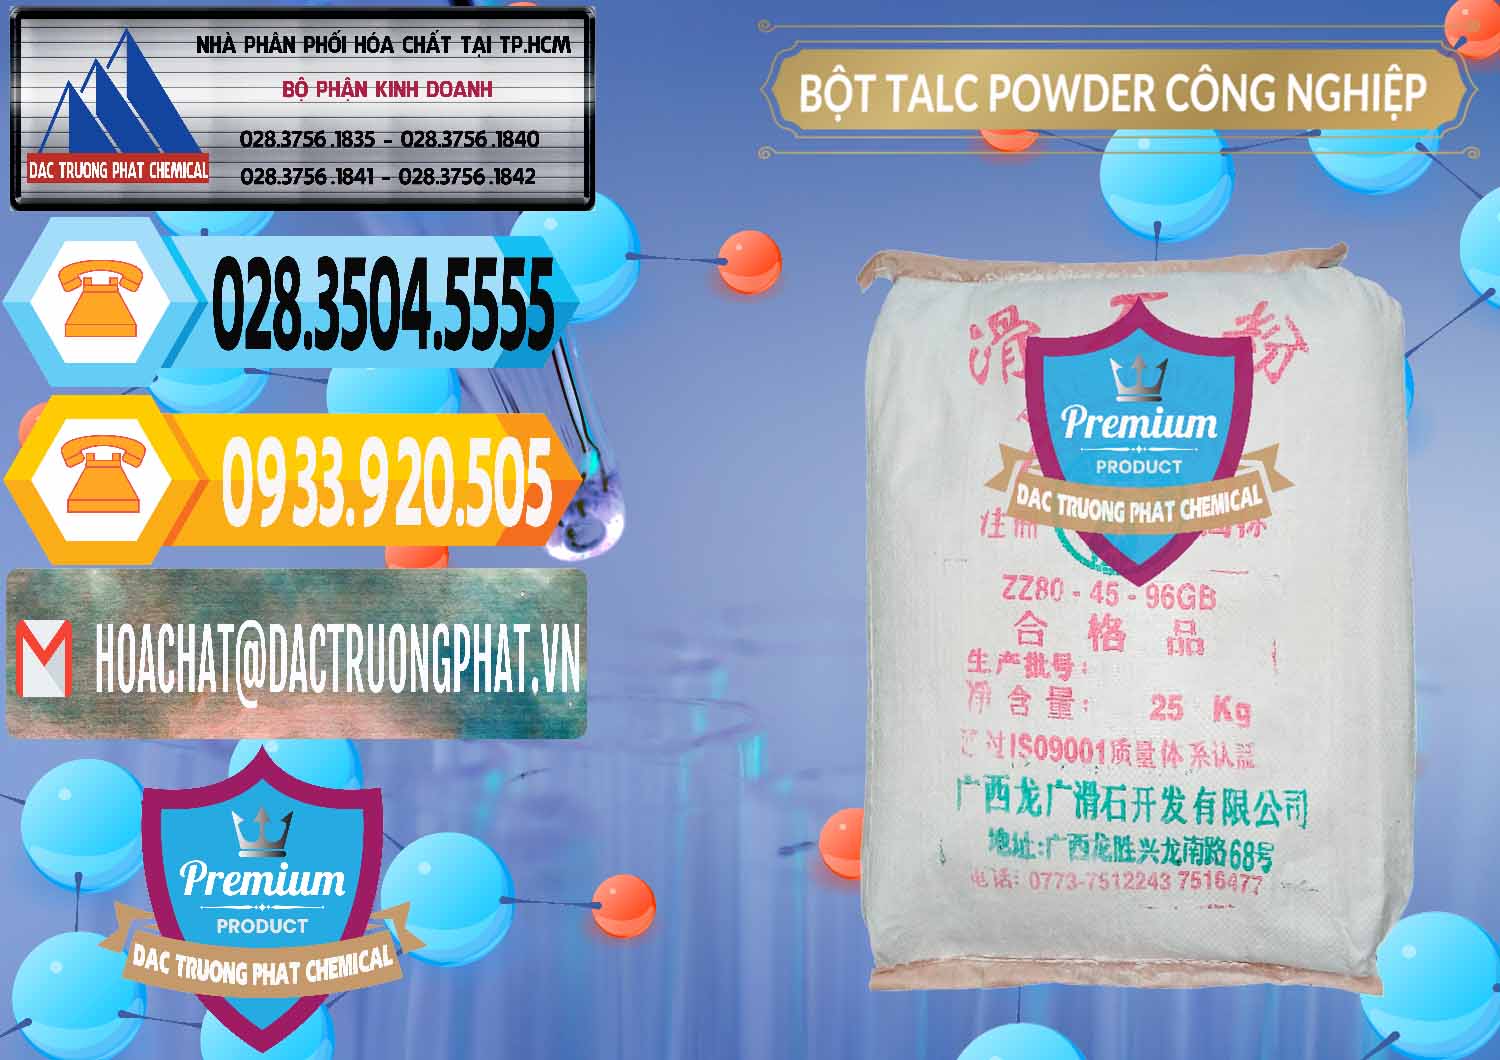 Nhà nhập khẩu ( bán ) Bột Talc Powder Công Nghiệp Trung Quốc China - 0037 - Công ty kinh doanh _ phân phối hóa chất tại TP.HCM - hoachattayrua.net